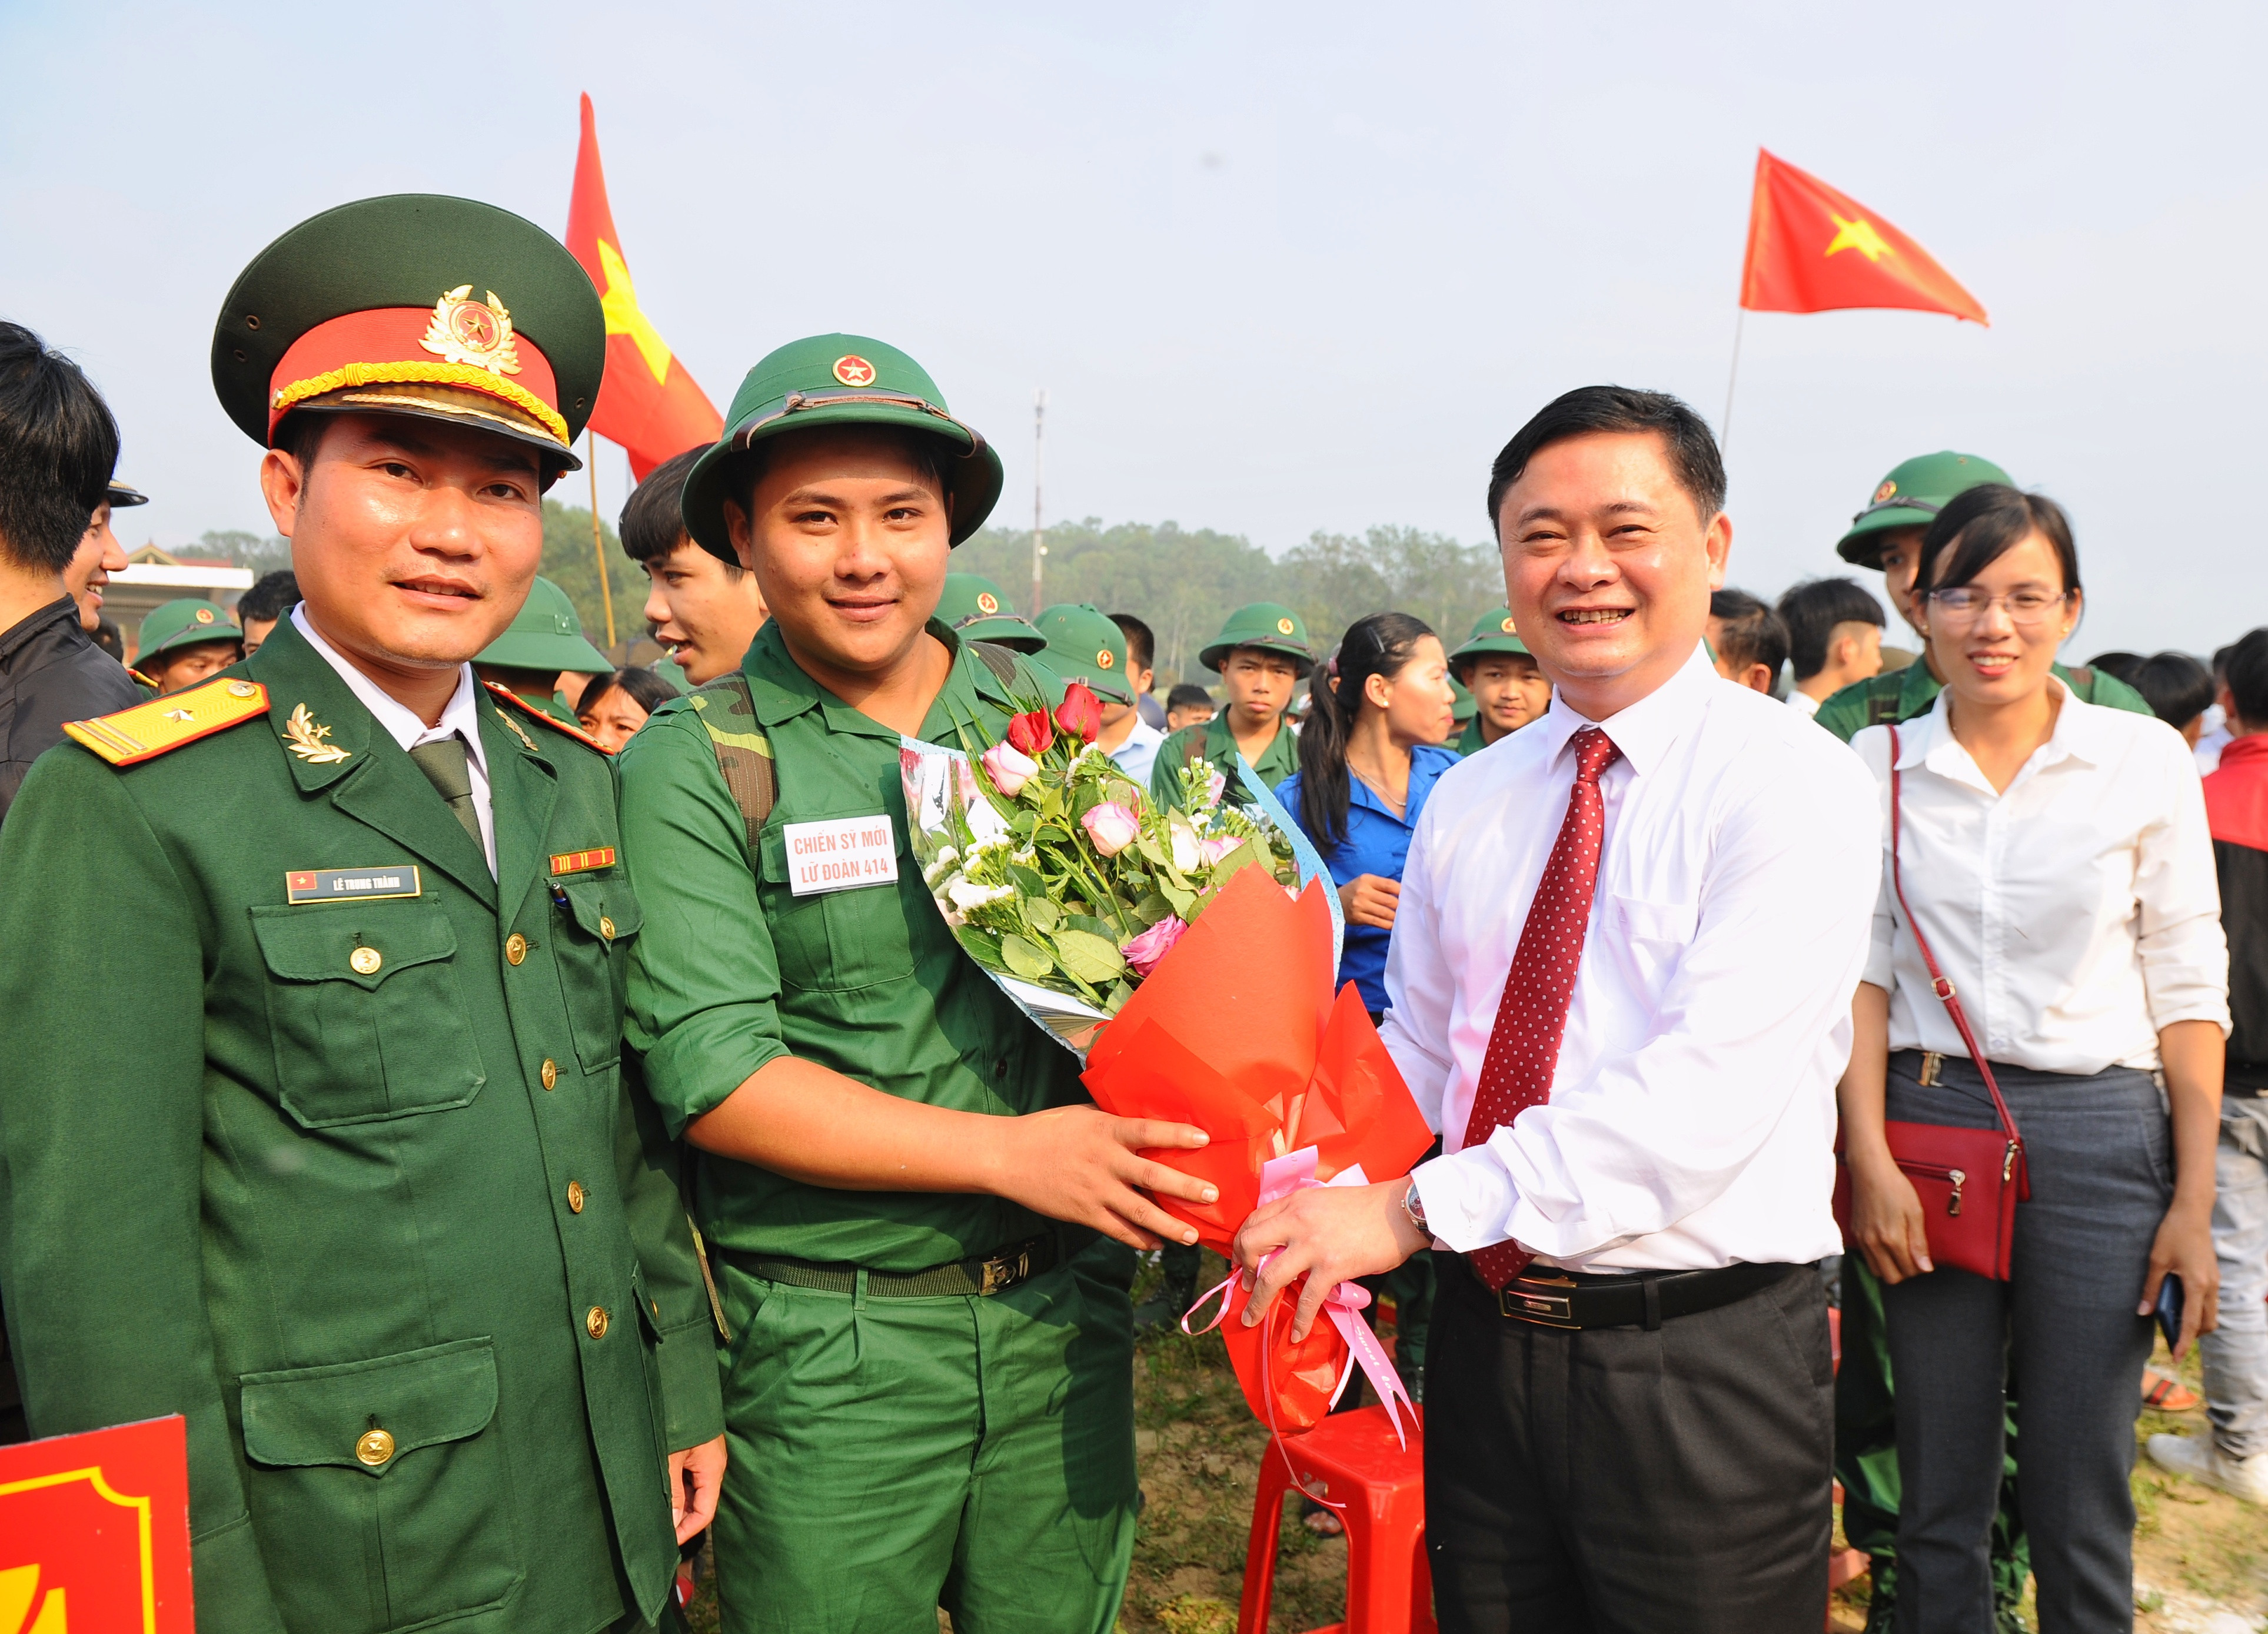 Đồng chí Thái Thanh Quý tặng hoa động viên các tân binh lên đường nhập ngũ. Ảnh: Thành Cường